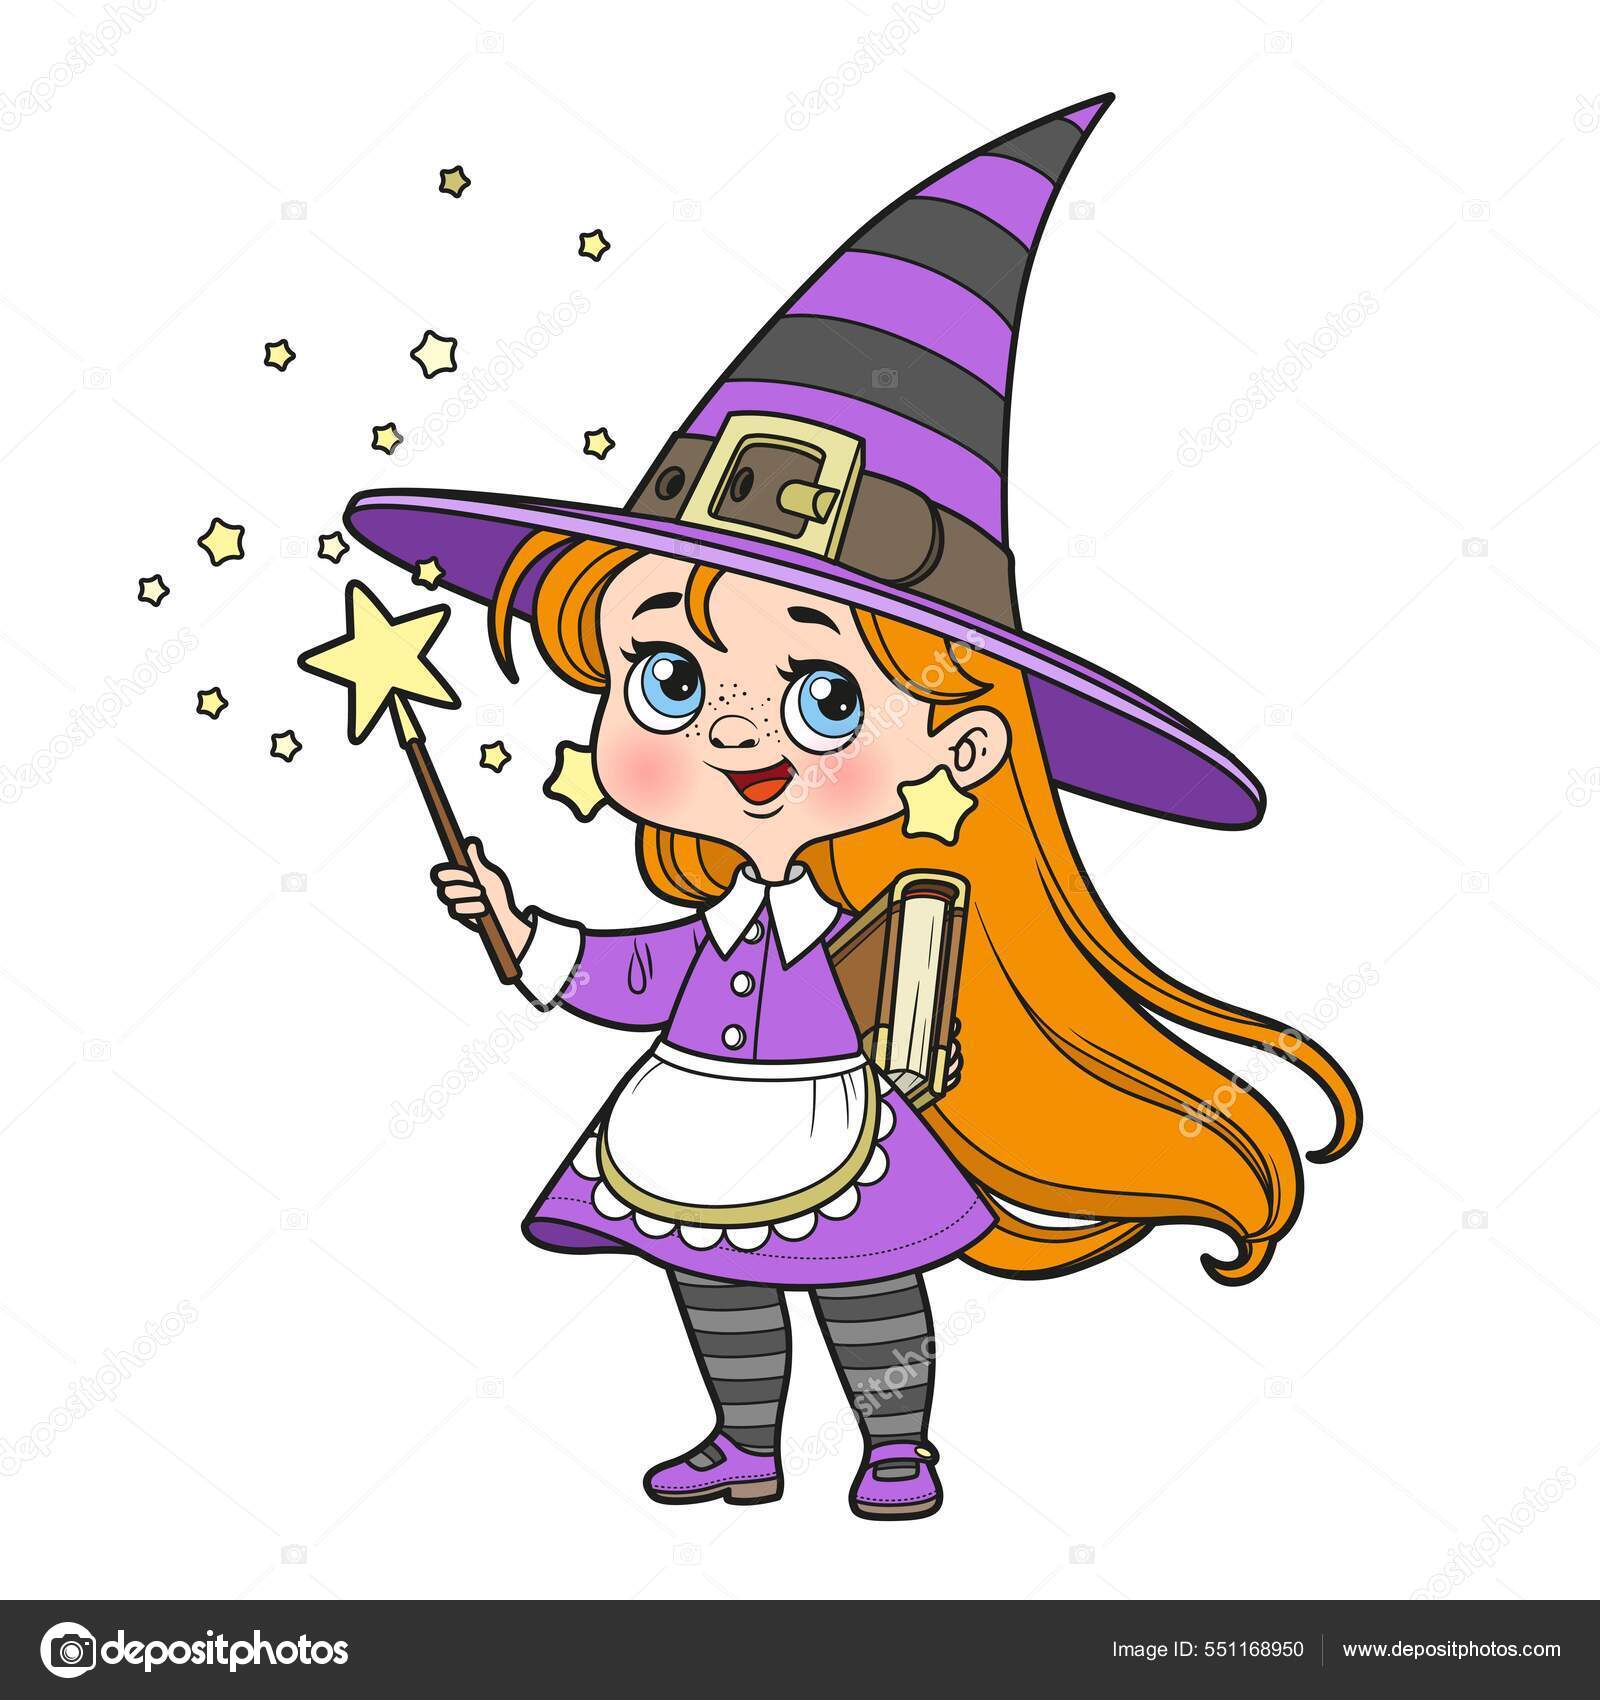 Desenho de bruxa bonita voando em uma vassoura com gato para colorir